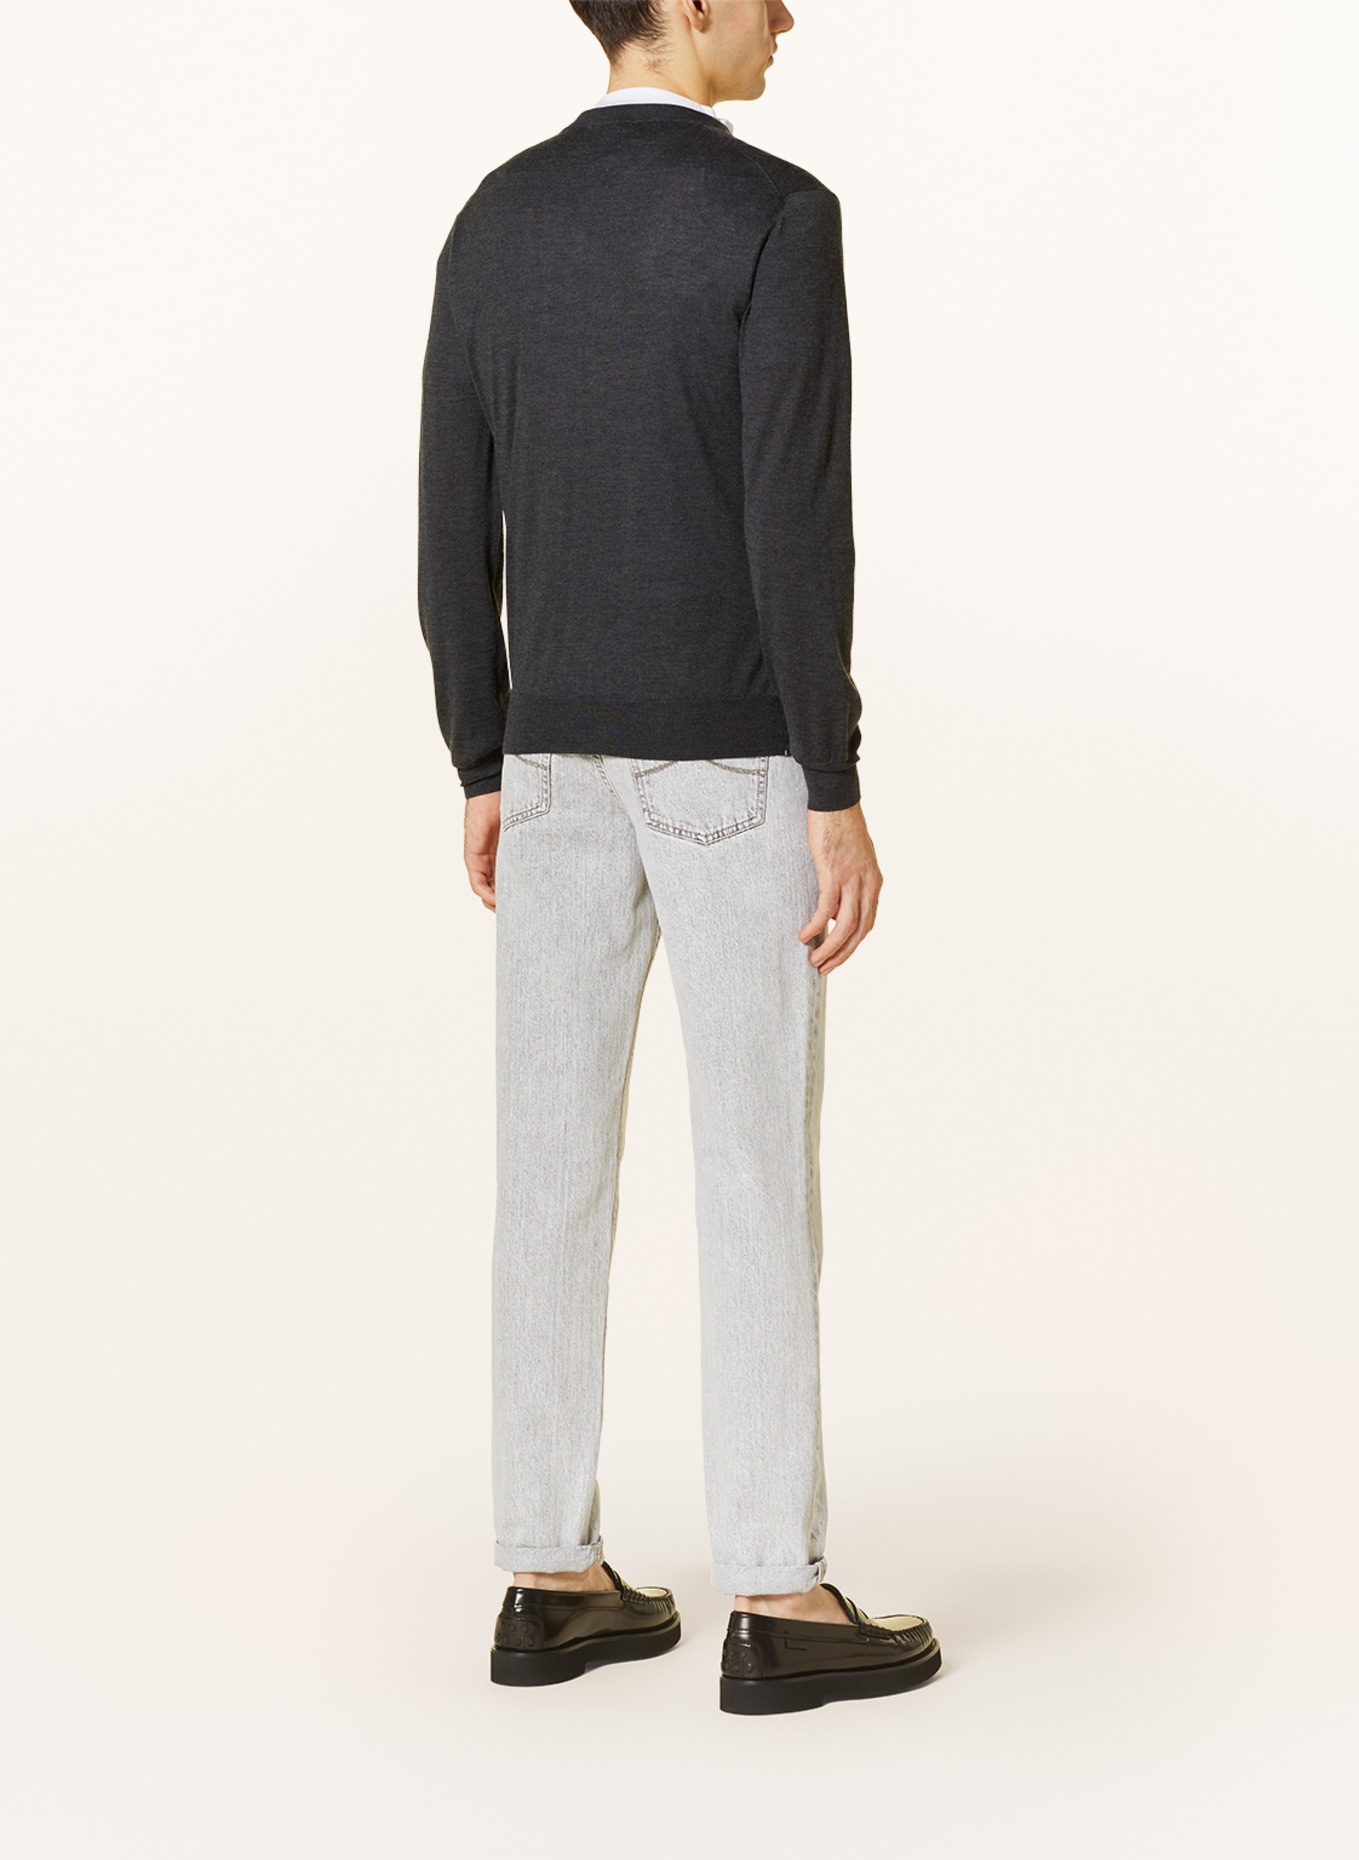 FIORONI Cashmere sweater, Color: DARK GRAY (Image 3)